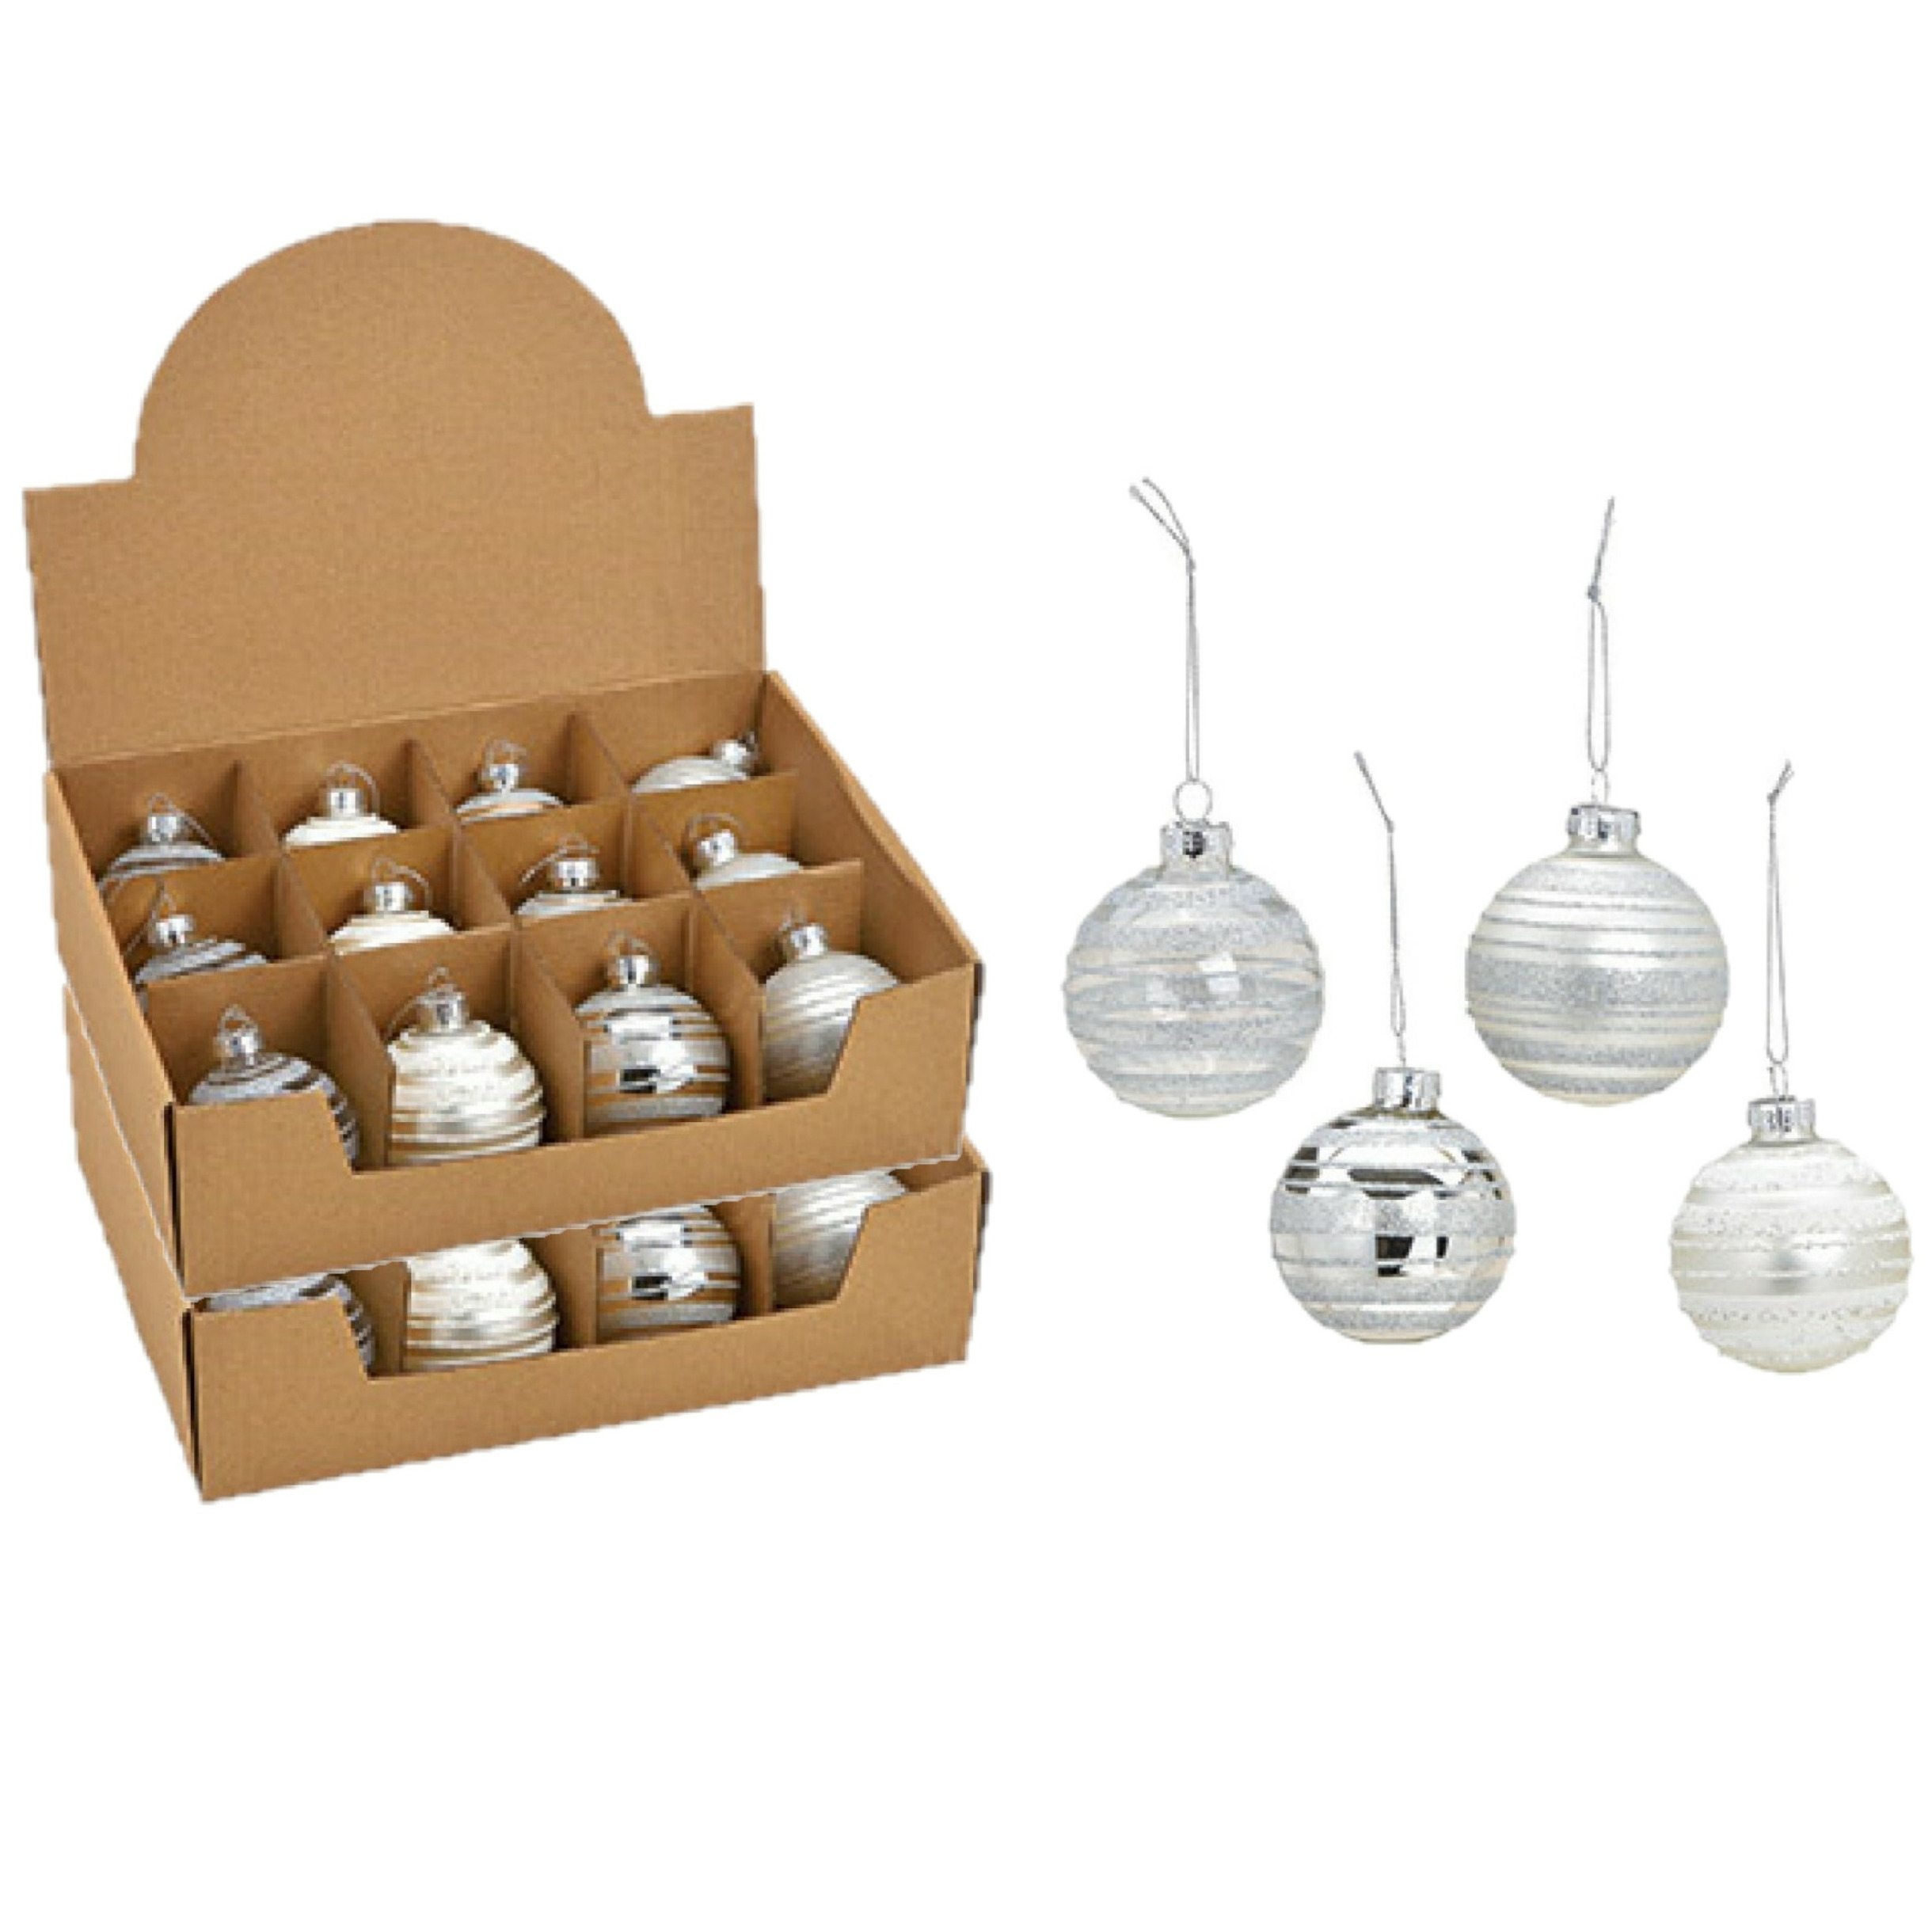 24x stuks luxe gedecoreerde glazen kerstballen zilver 6 cm